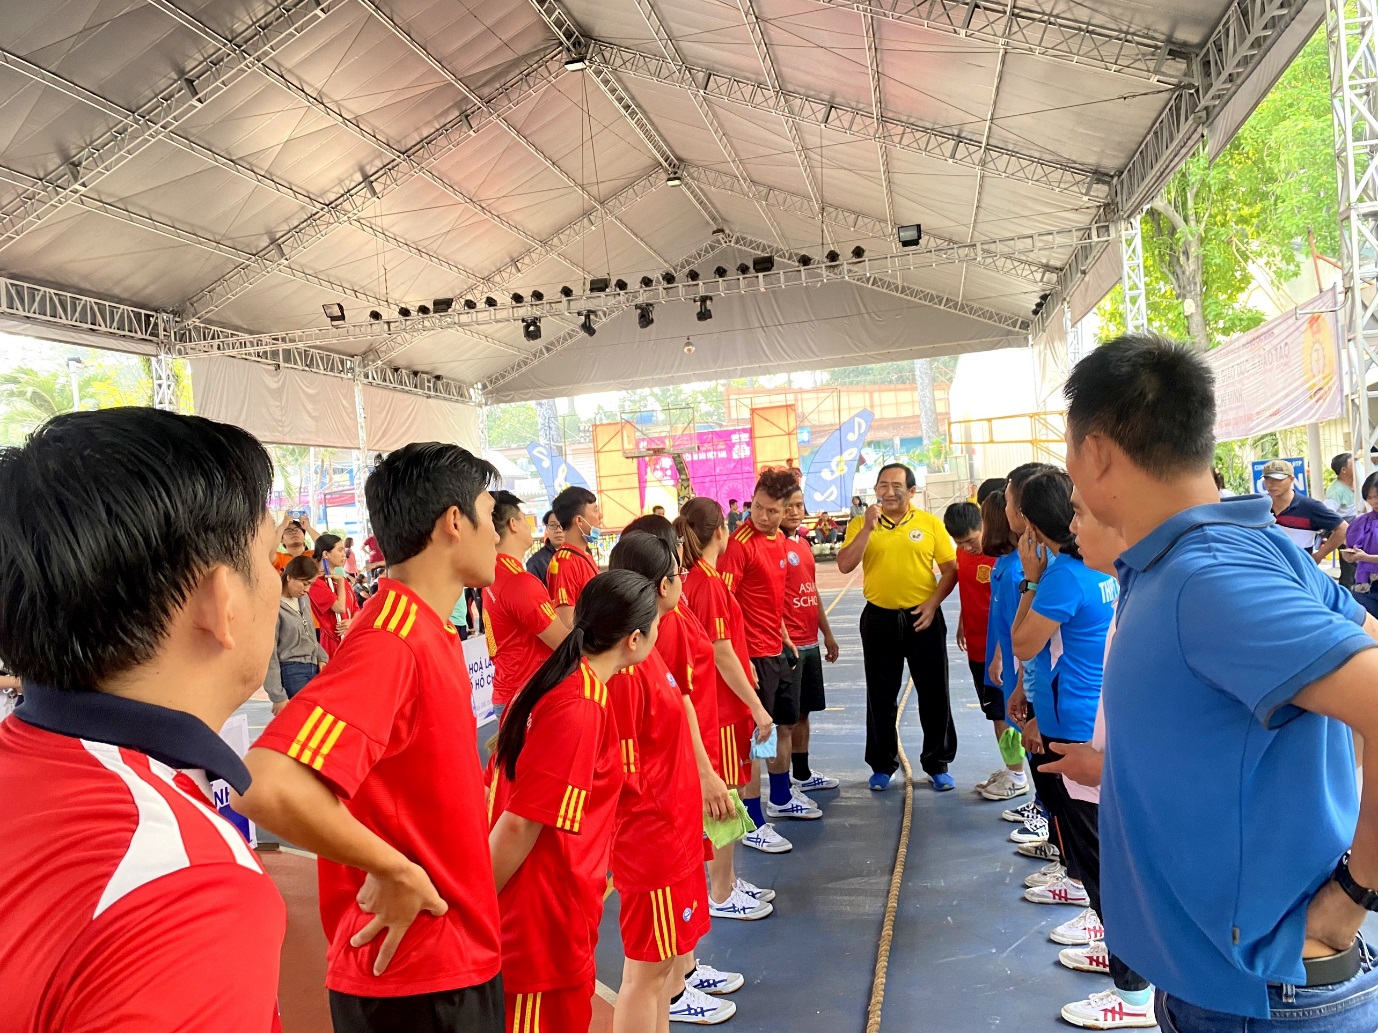 Asian School bảo vệ thành công chức vô địch Kéo co Hội thao Công đoàn ngành giáo dục TPHCM 2020